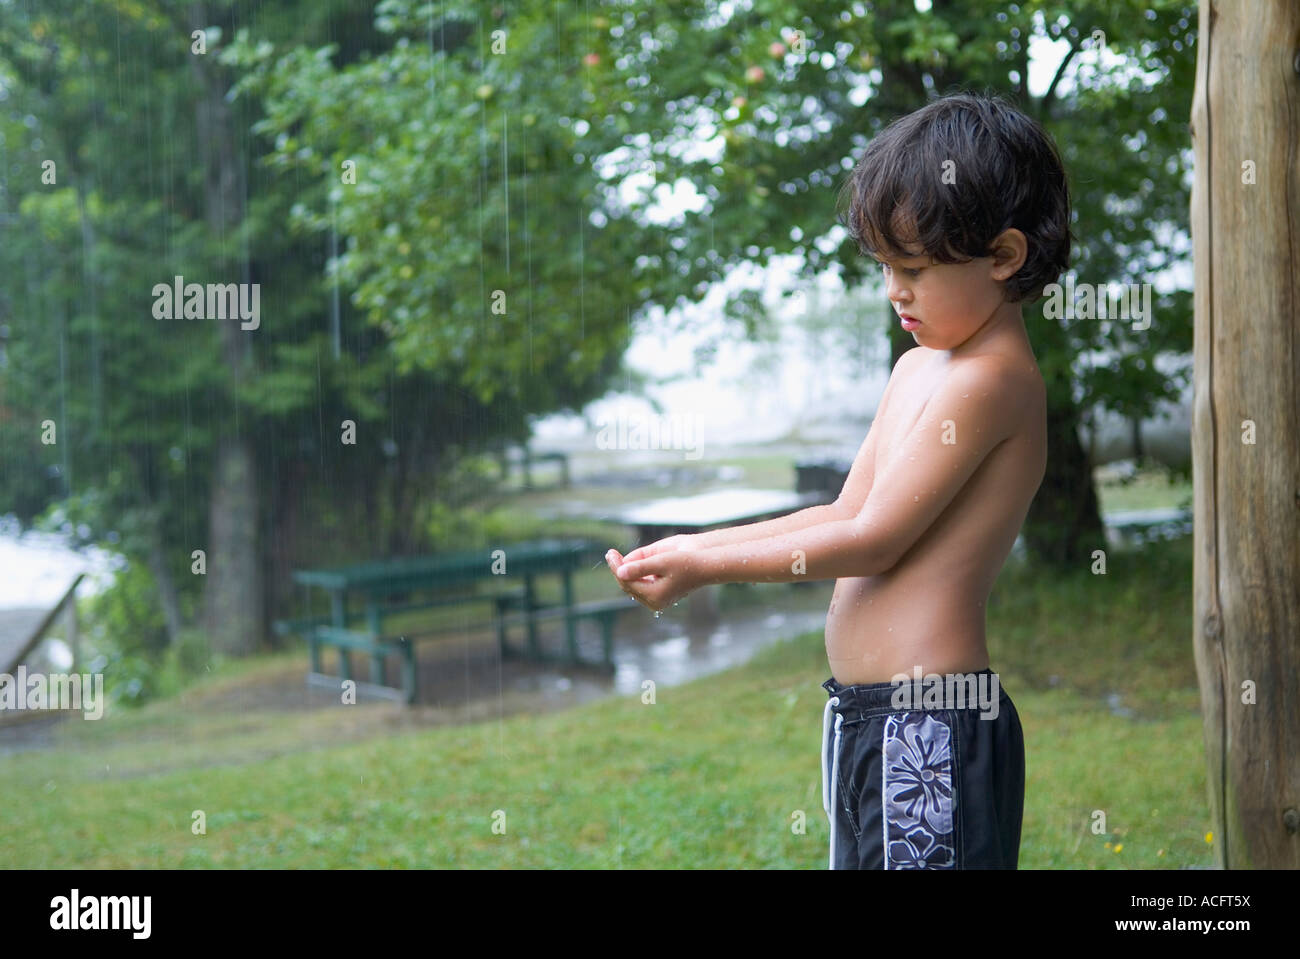 Jeune garçon en maillot de bain attendent d'une pluie de parution du modèle. Banque D'Images